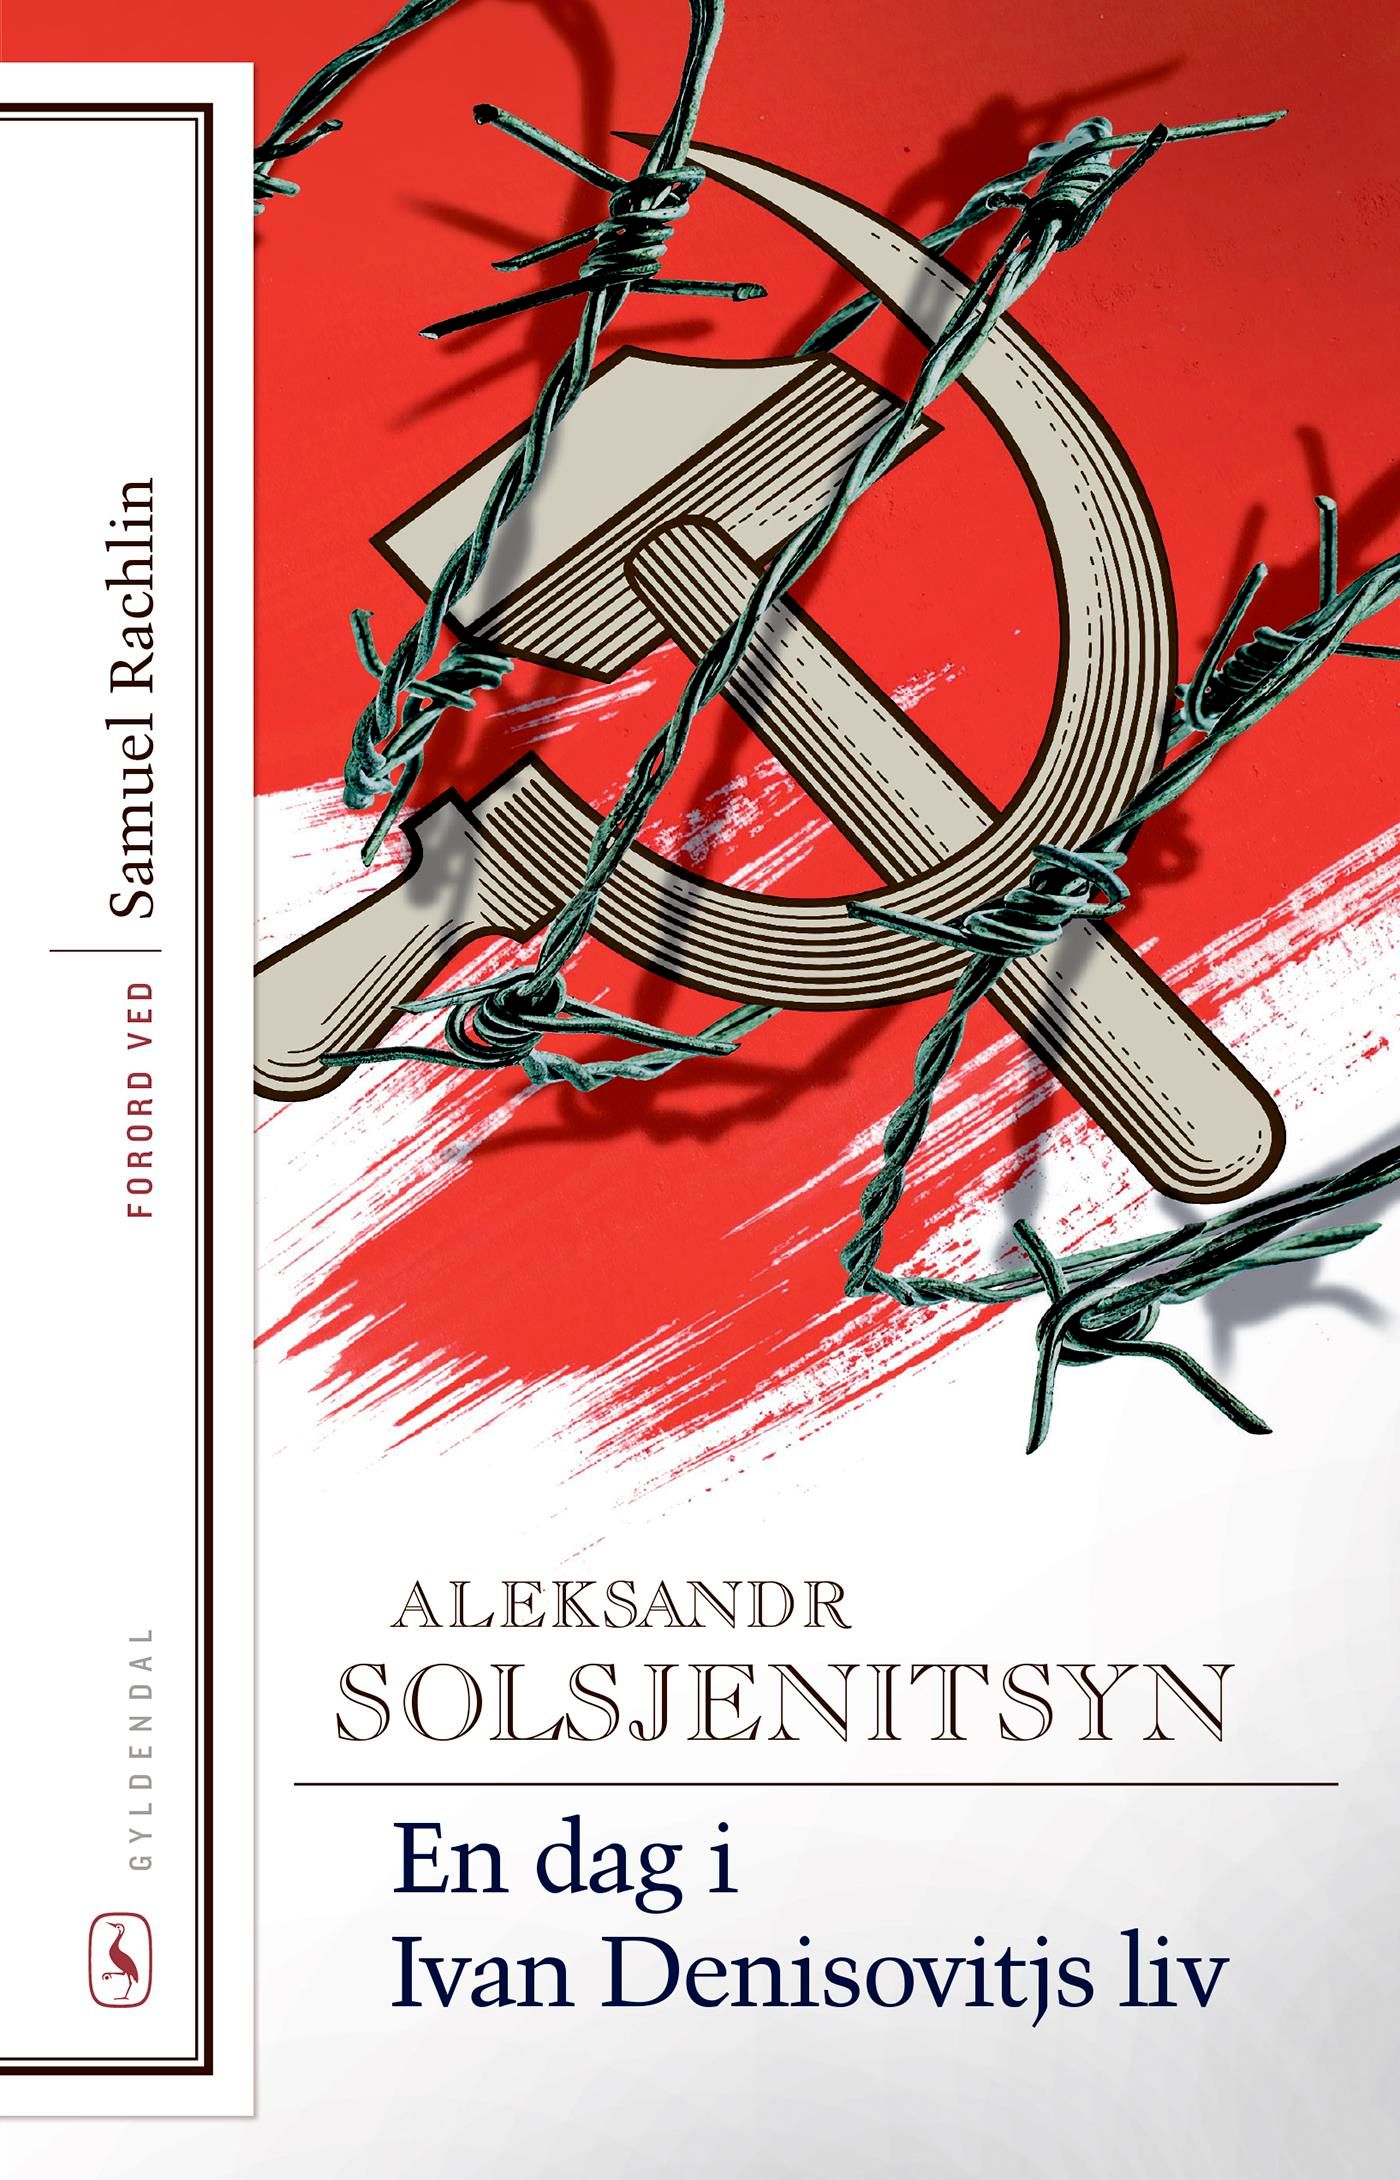 En dag i Ivan Denisovitjs liv, eBook by Aleksandr Solsjenitsyn